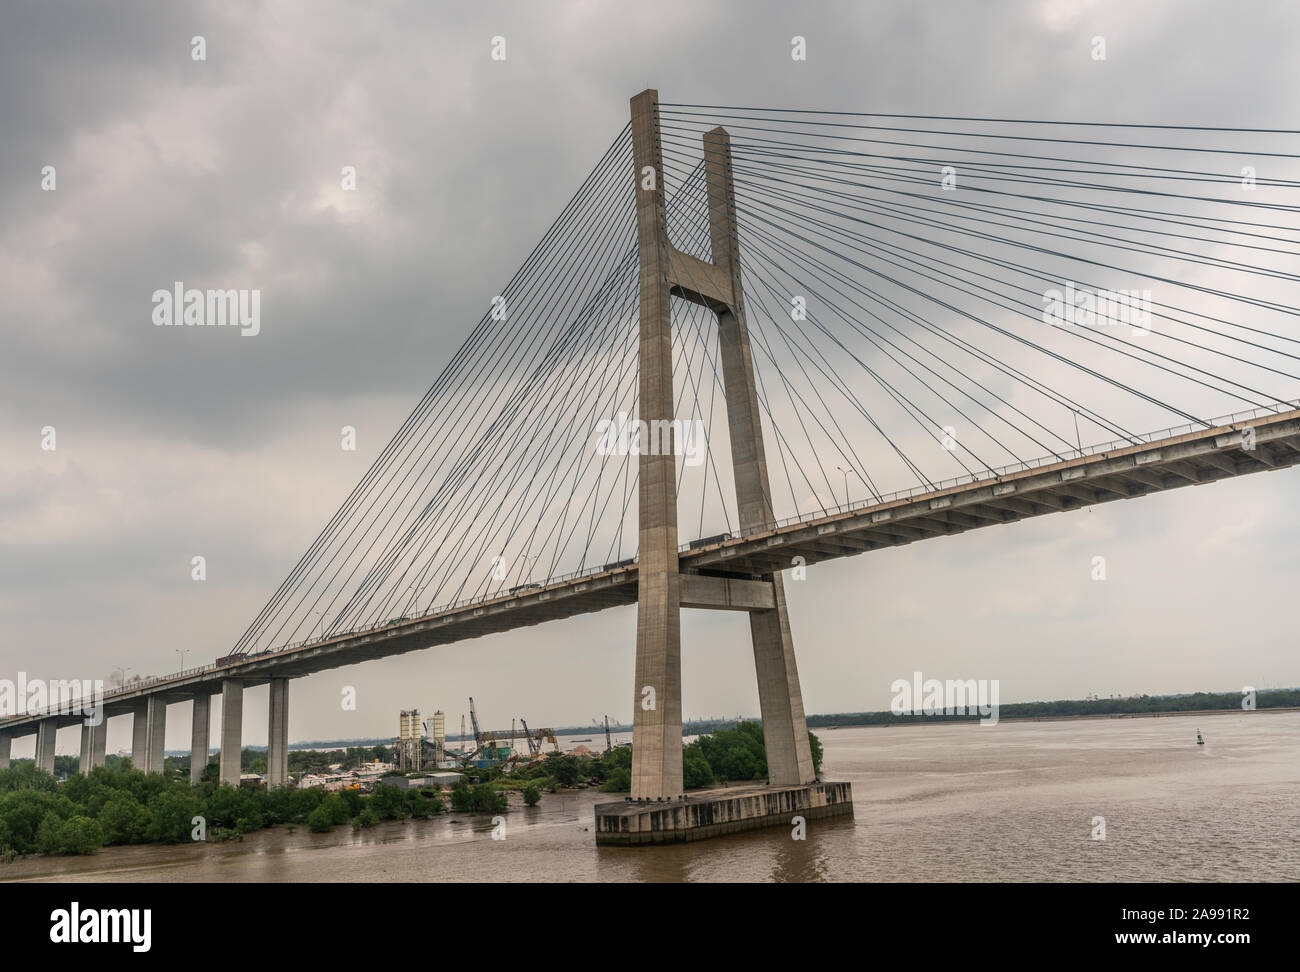 Ho Chi Minh City, Vietnam - 12. März 2019: Langen Tau und Song Sai Gon Flüsse Treffpunkt. Landschaft mit H-förmigen Pylon der Phu My Brücke Stockfoto